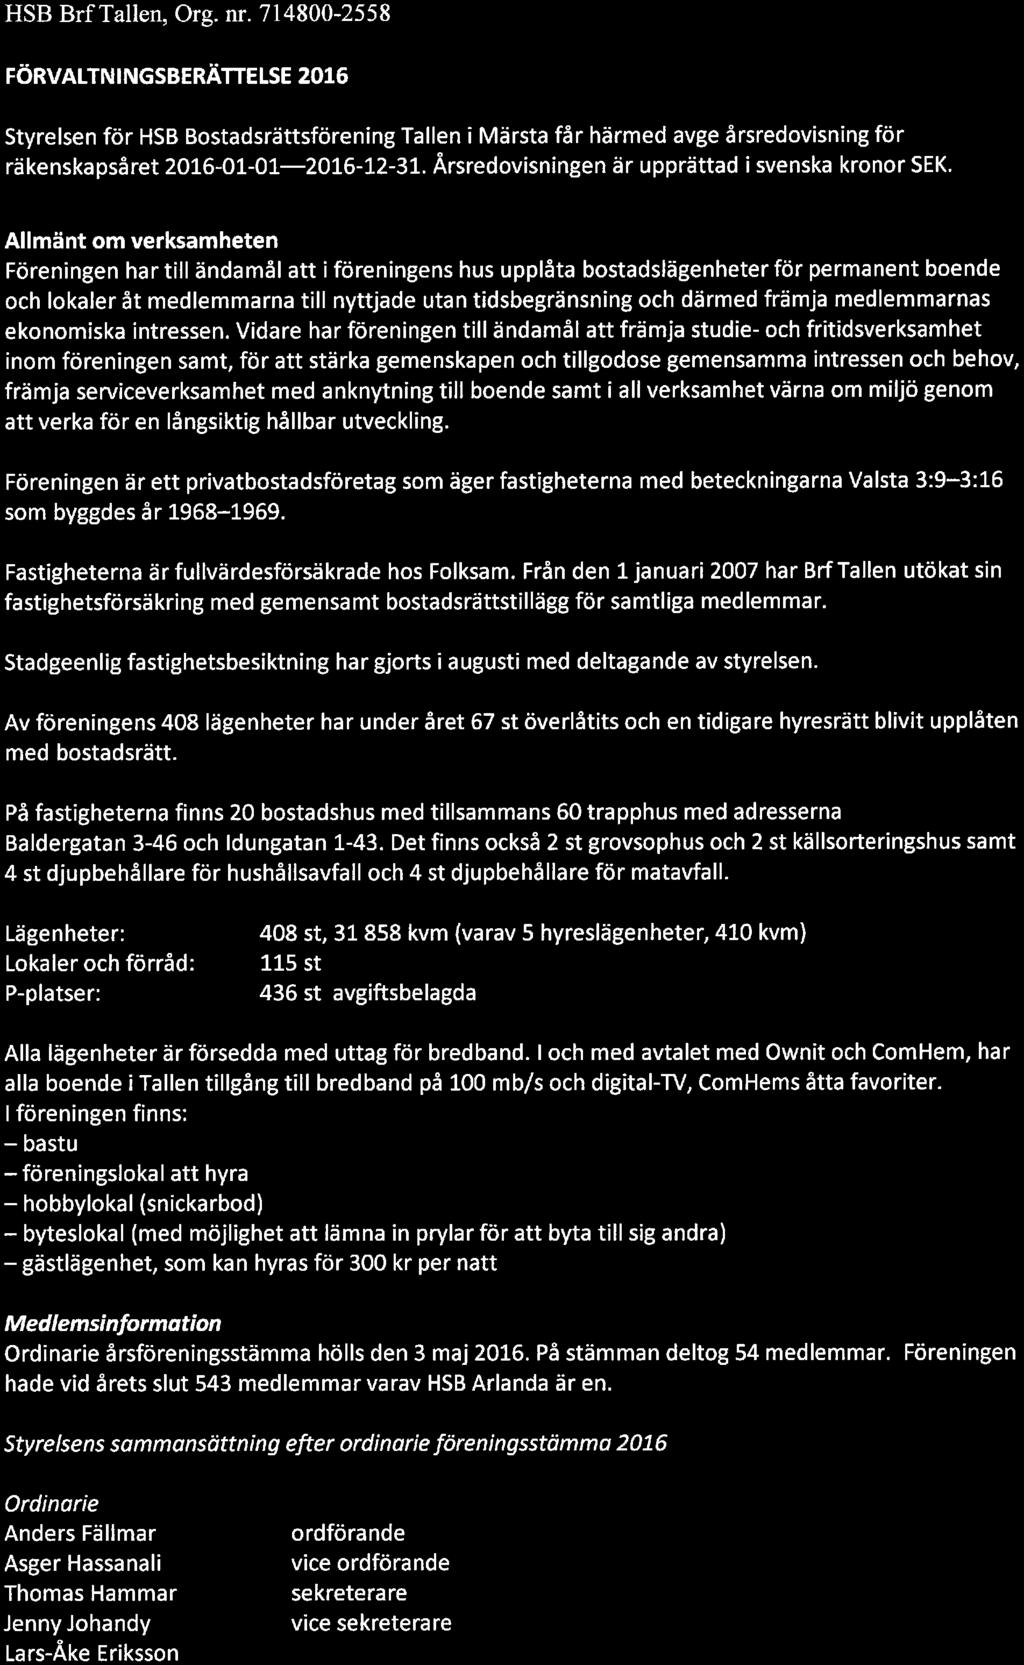 HSB Brf Tallen, Org. nr. 714800-2558 l FÖRVALTNINGSBERÄTTELSE 2016 Styrelsen för HSB Bstadsrättsförening Tallen i Märsta får härmed avge årsredvisning för räkenskapsåret 2016-01-01-.